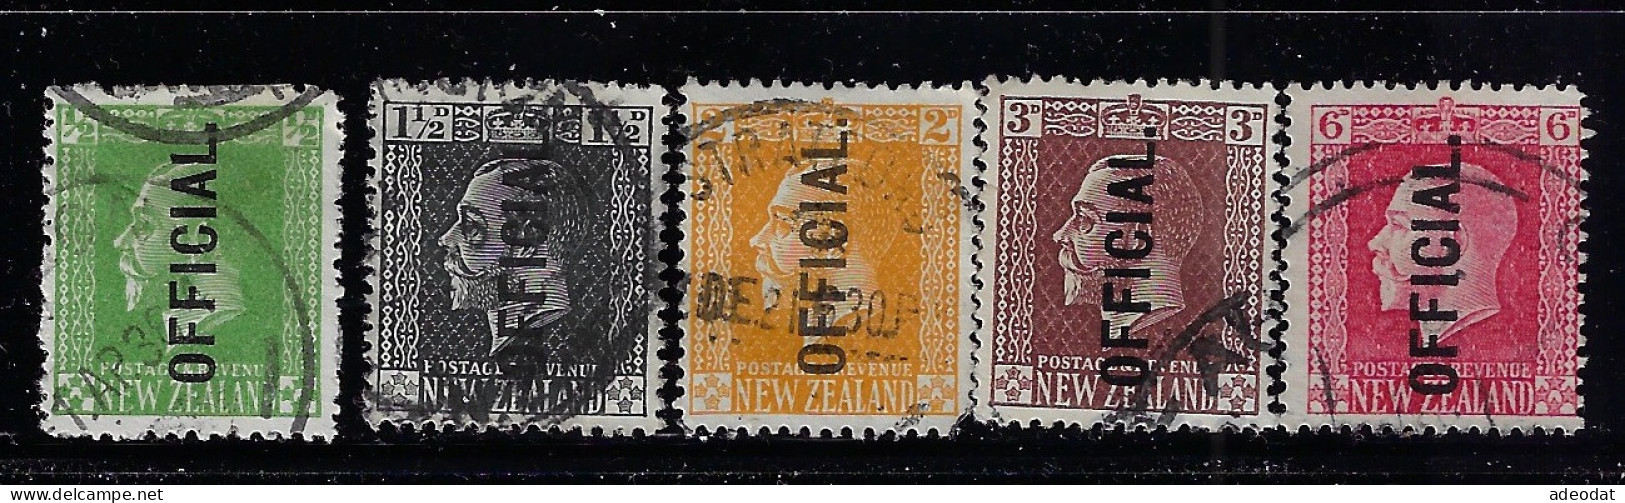 NEW ZEALAND 1915 0FFICIAL STAMPS  SCOTT #O41,O43,O45,O46,O48 USED - Dienstzegels